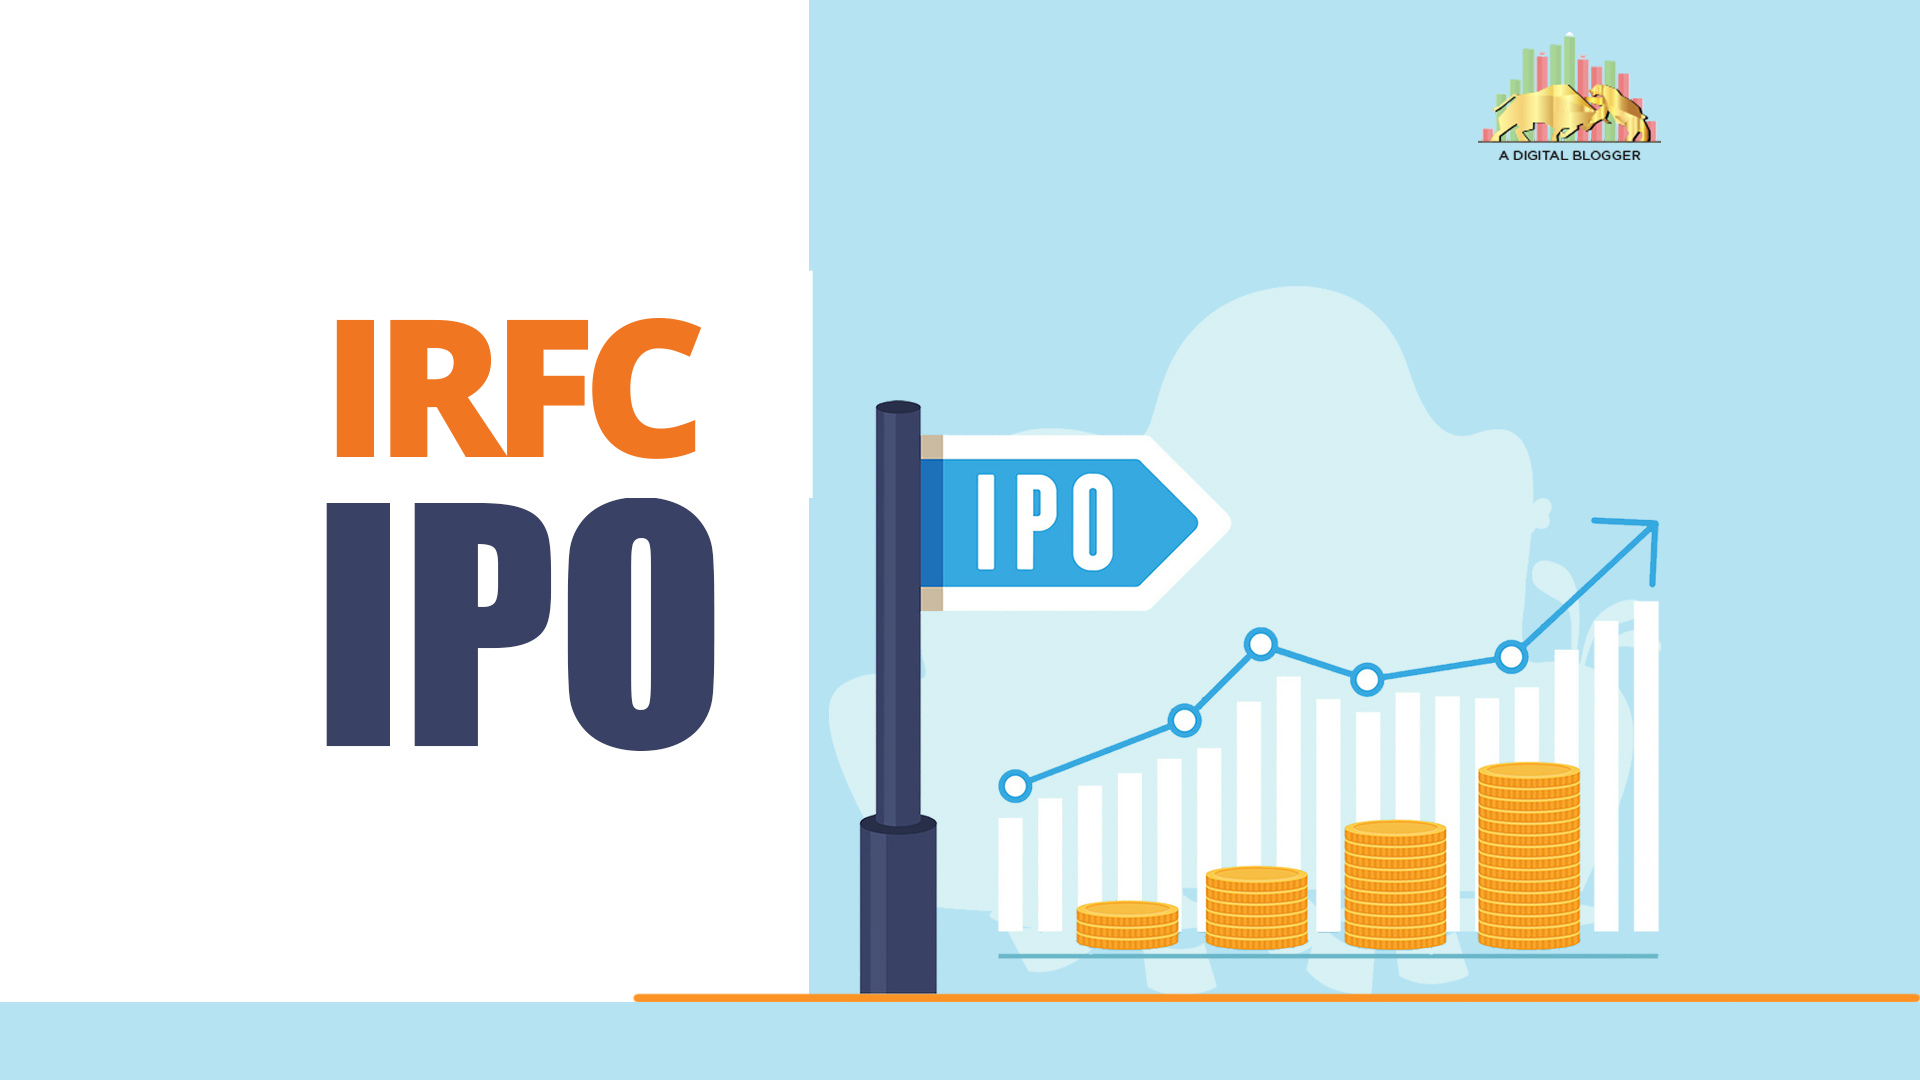 IRFC IPO